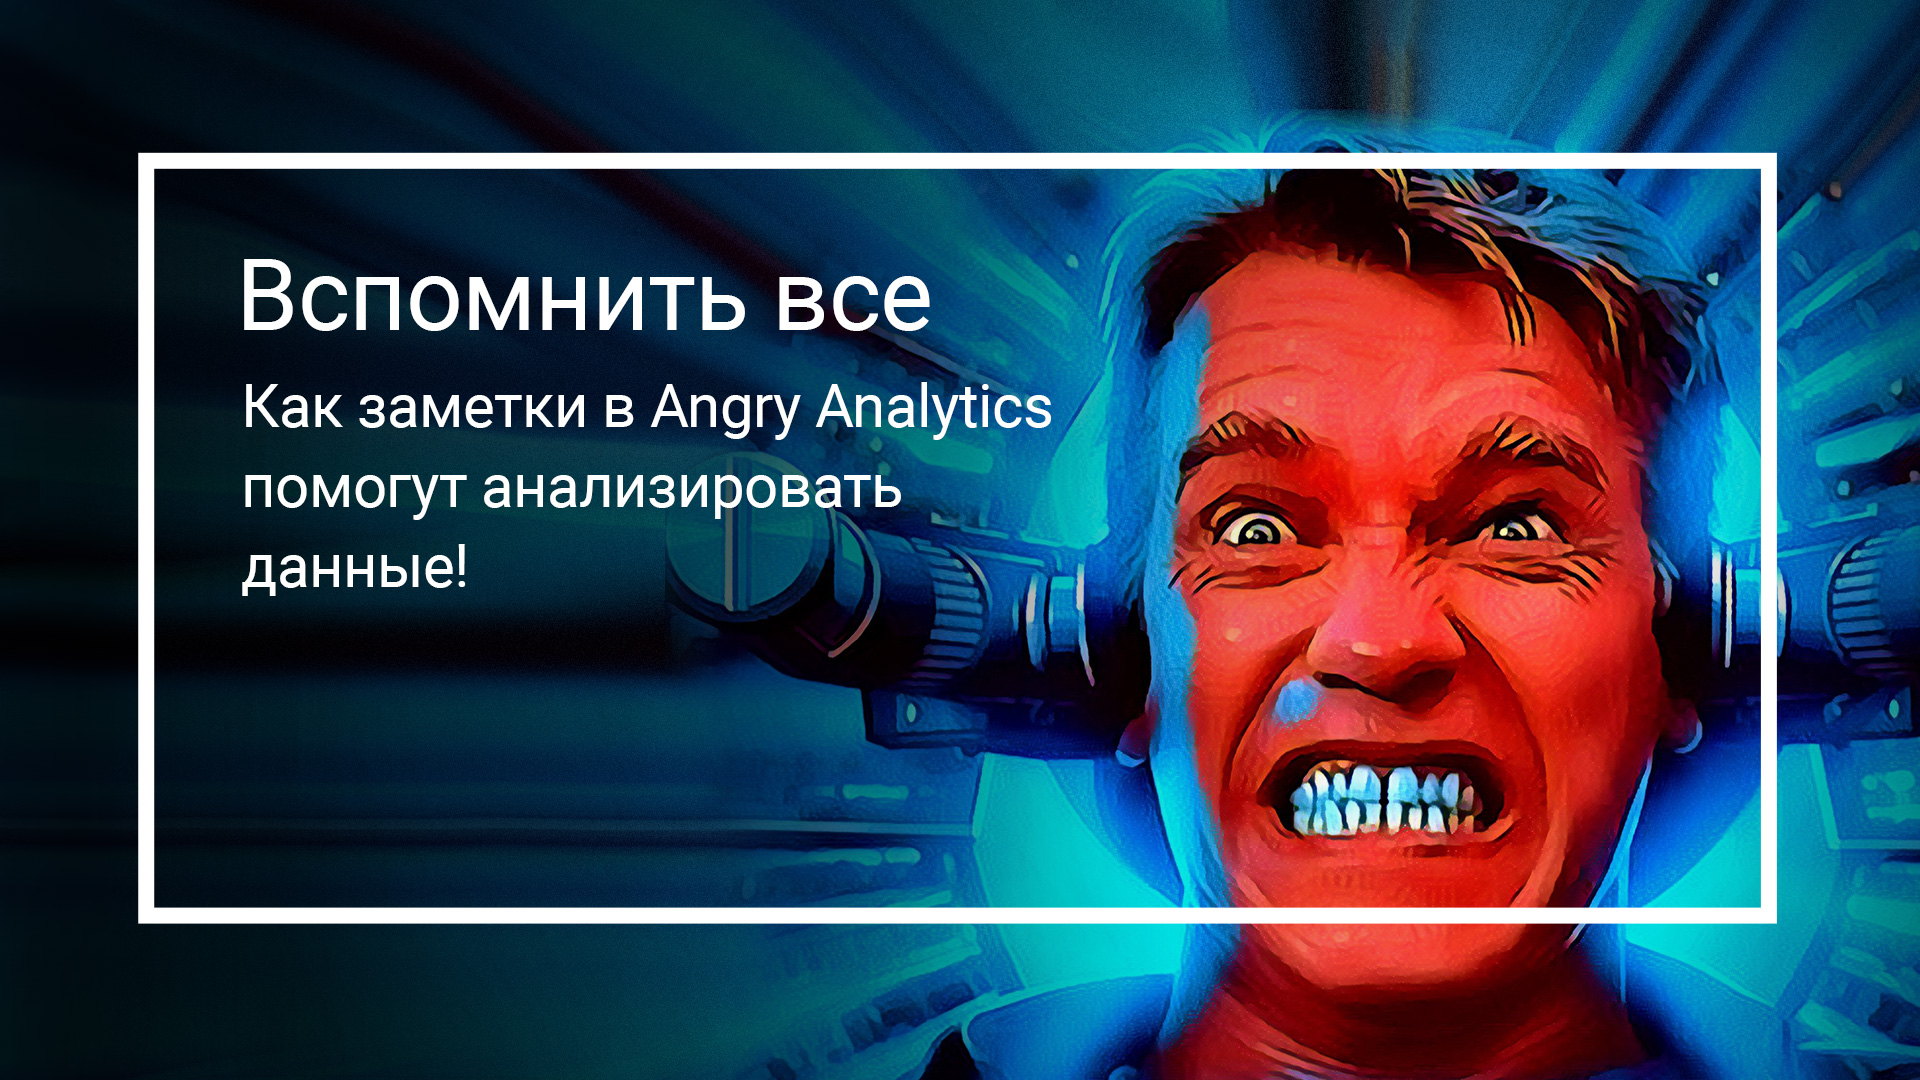 Вспомнить всё: как заметки в Angry Analytics помогут анализировать данные!